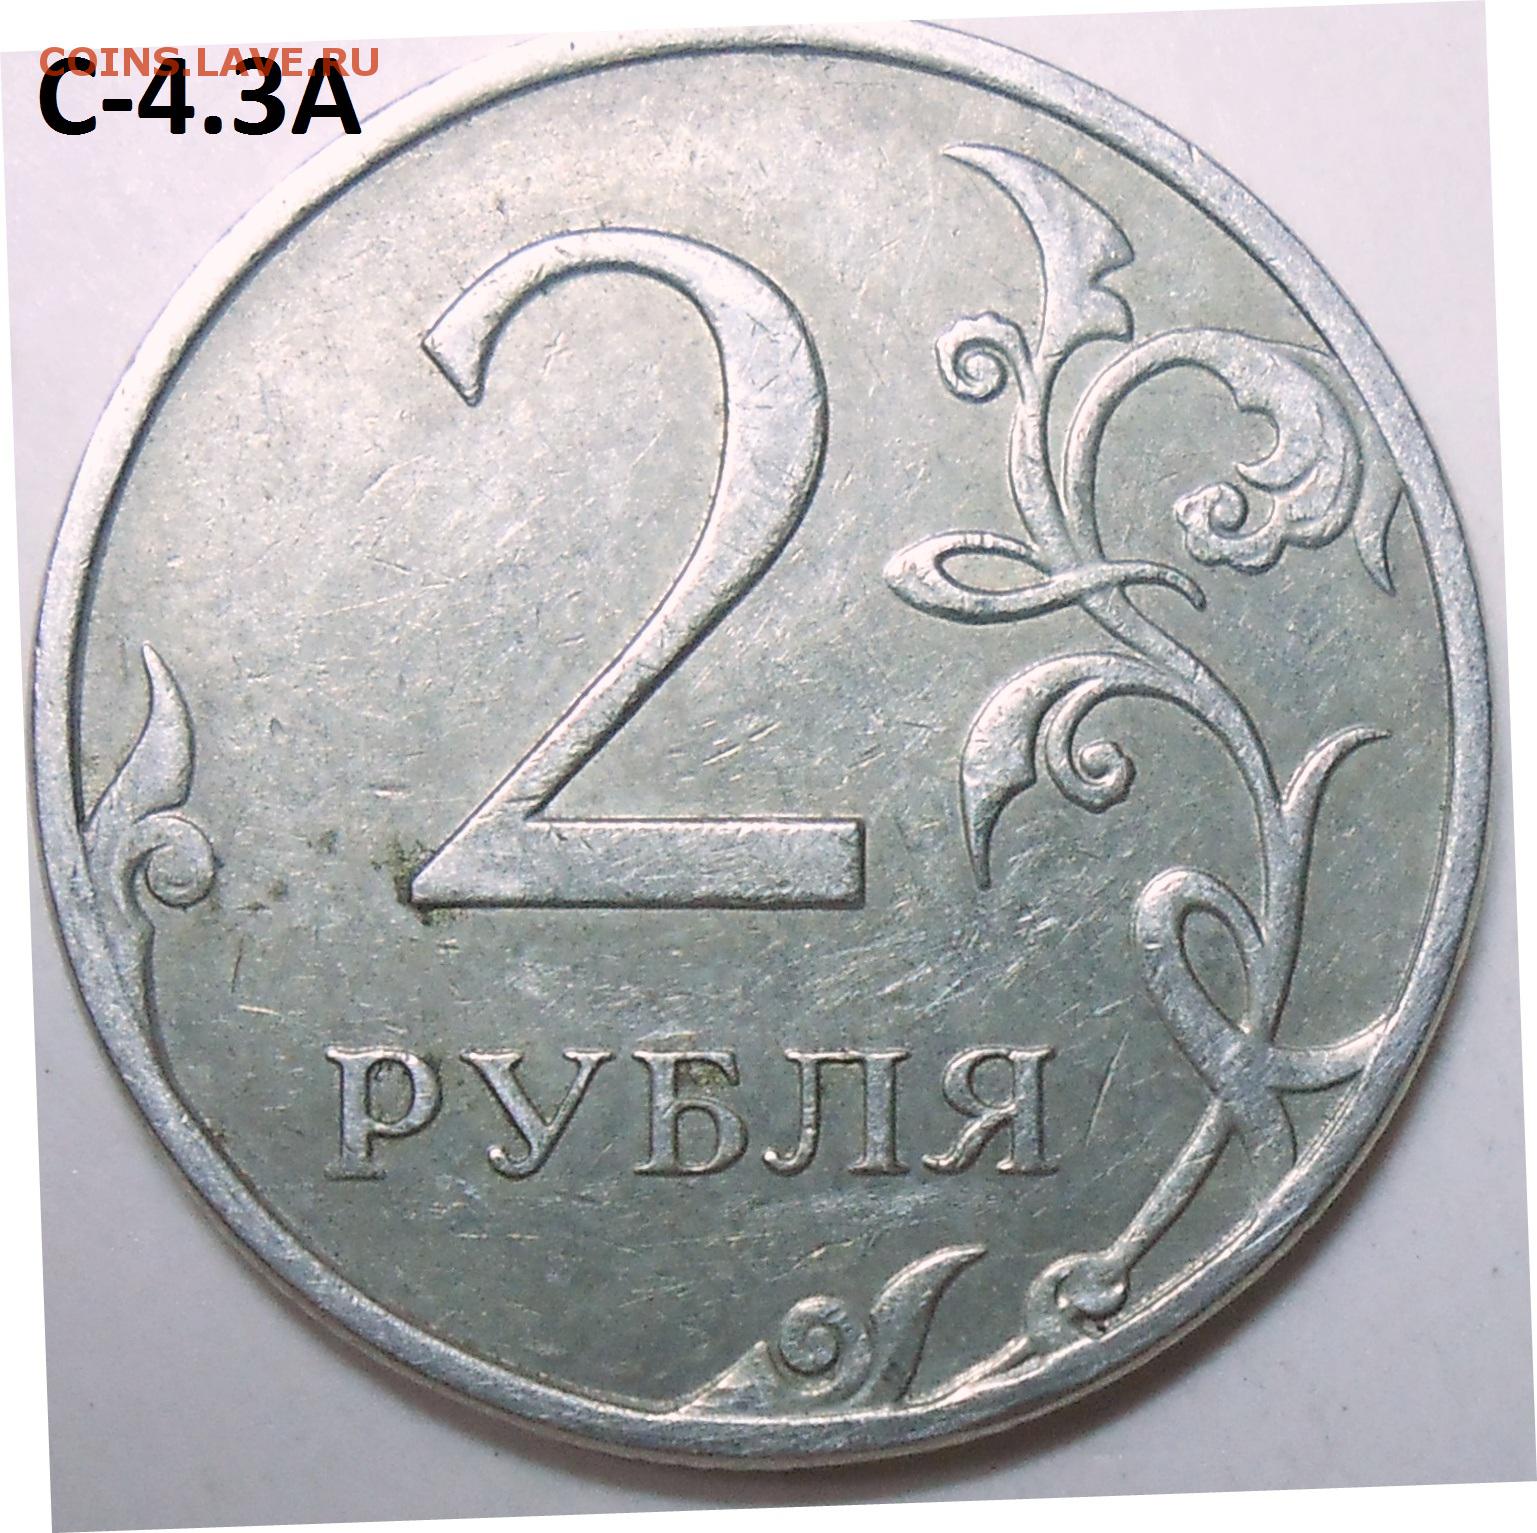 75 рублей килограмм